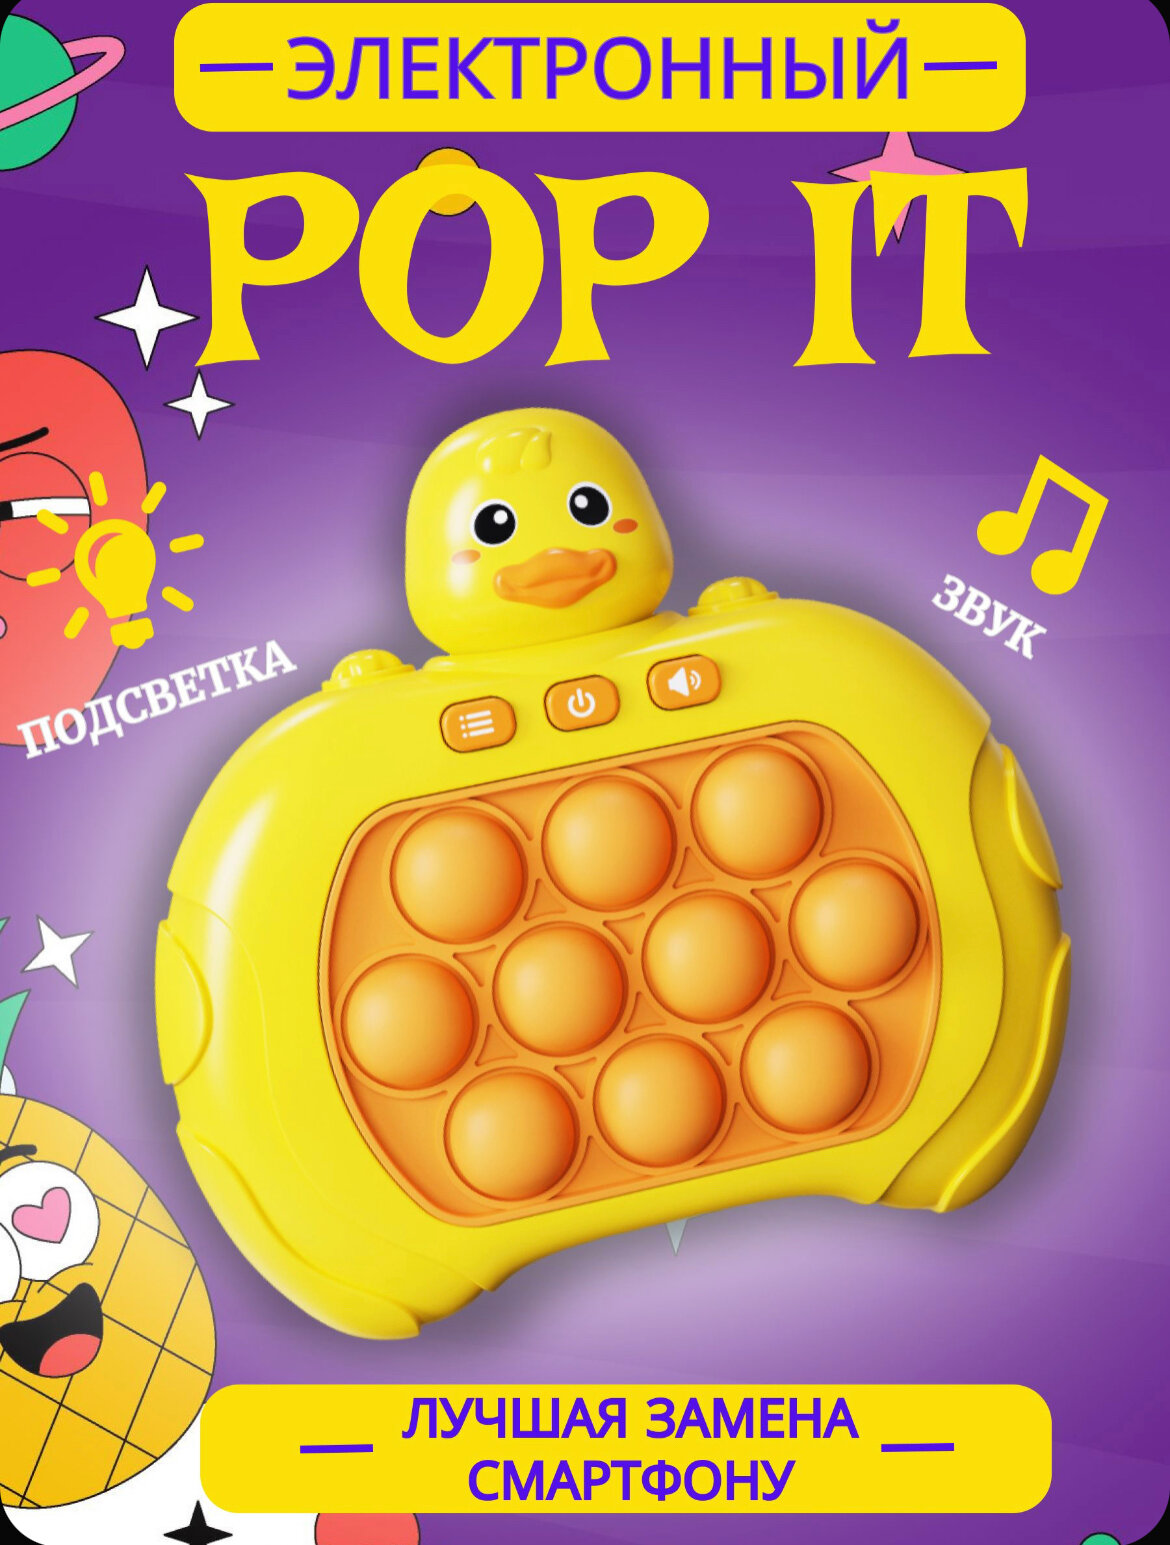 Pop it/Игрушка антистресс / игрушка для детей/Электронная игра поп ит антистресс/Поп Ит электронный/ детская игрушка